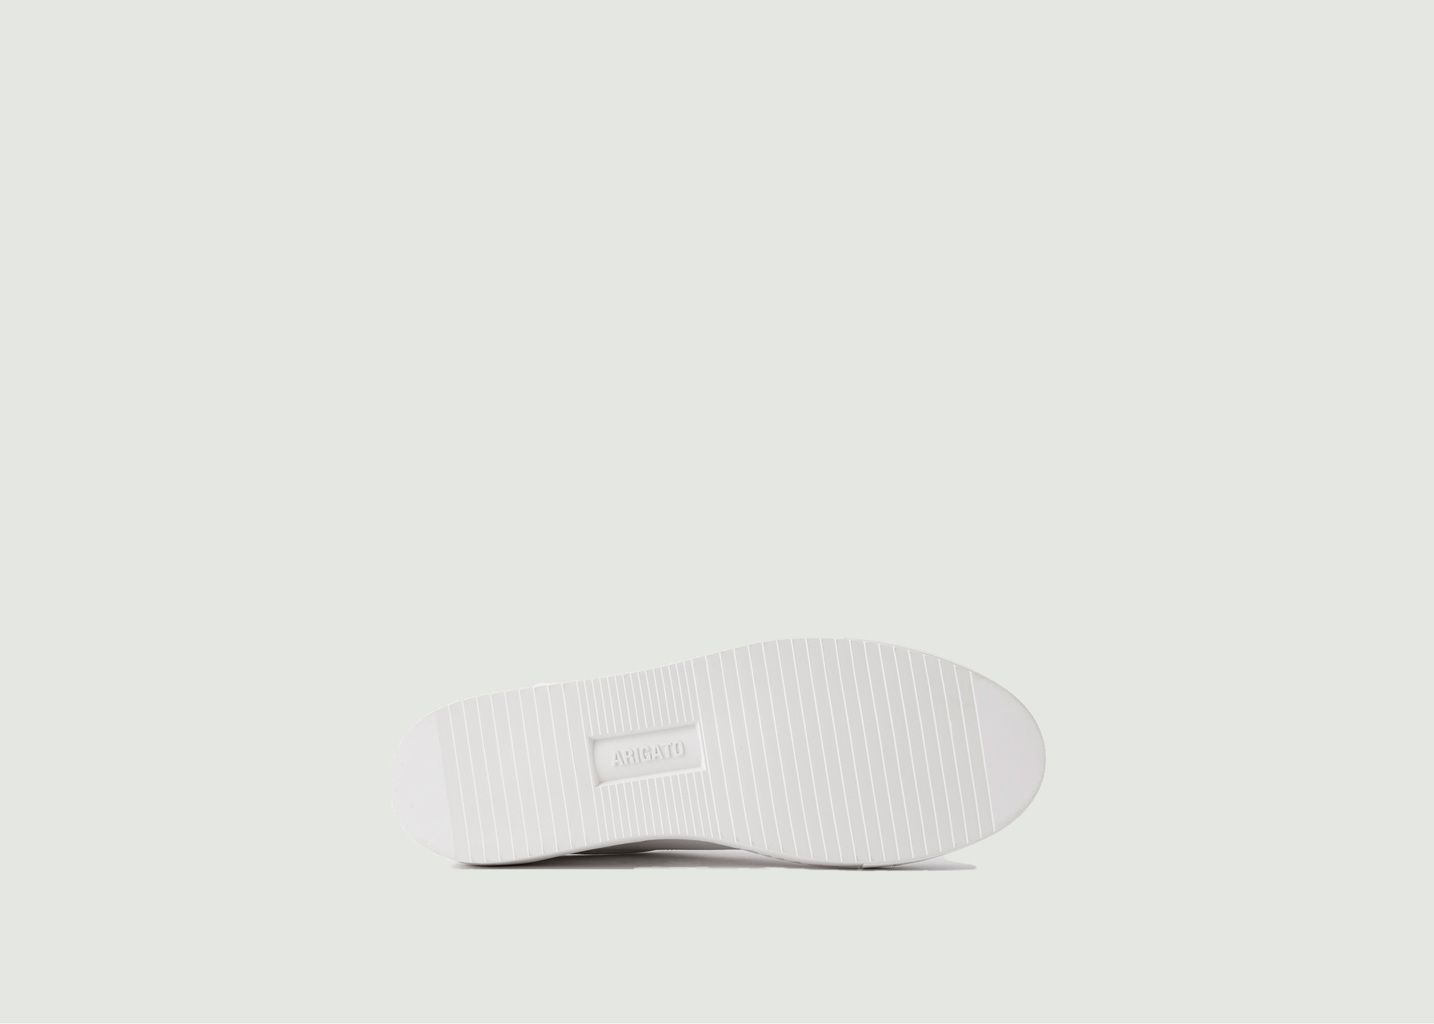 Clean 180 Bee Bird Sneakers - Axel Arigato